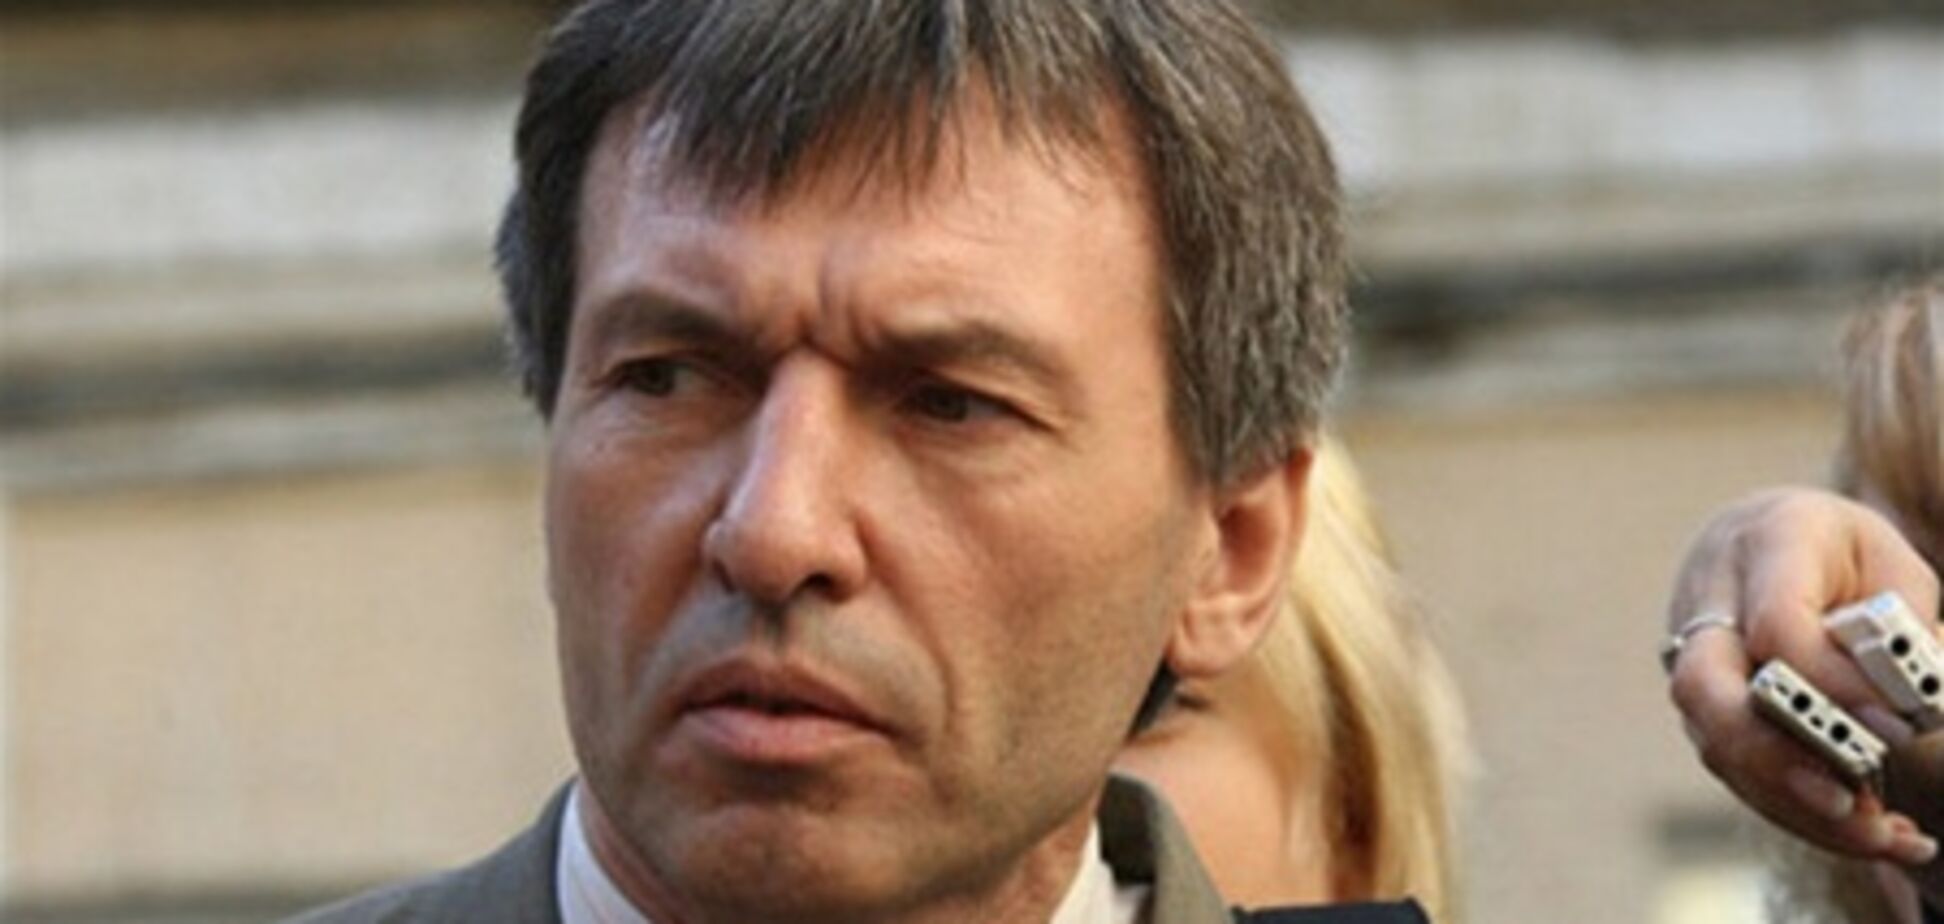 Адвокат: влада не дасть вказівки насильно доставити Тимошенко до суду